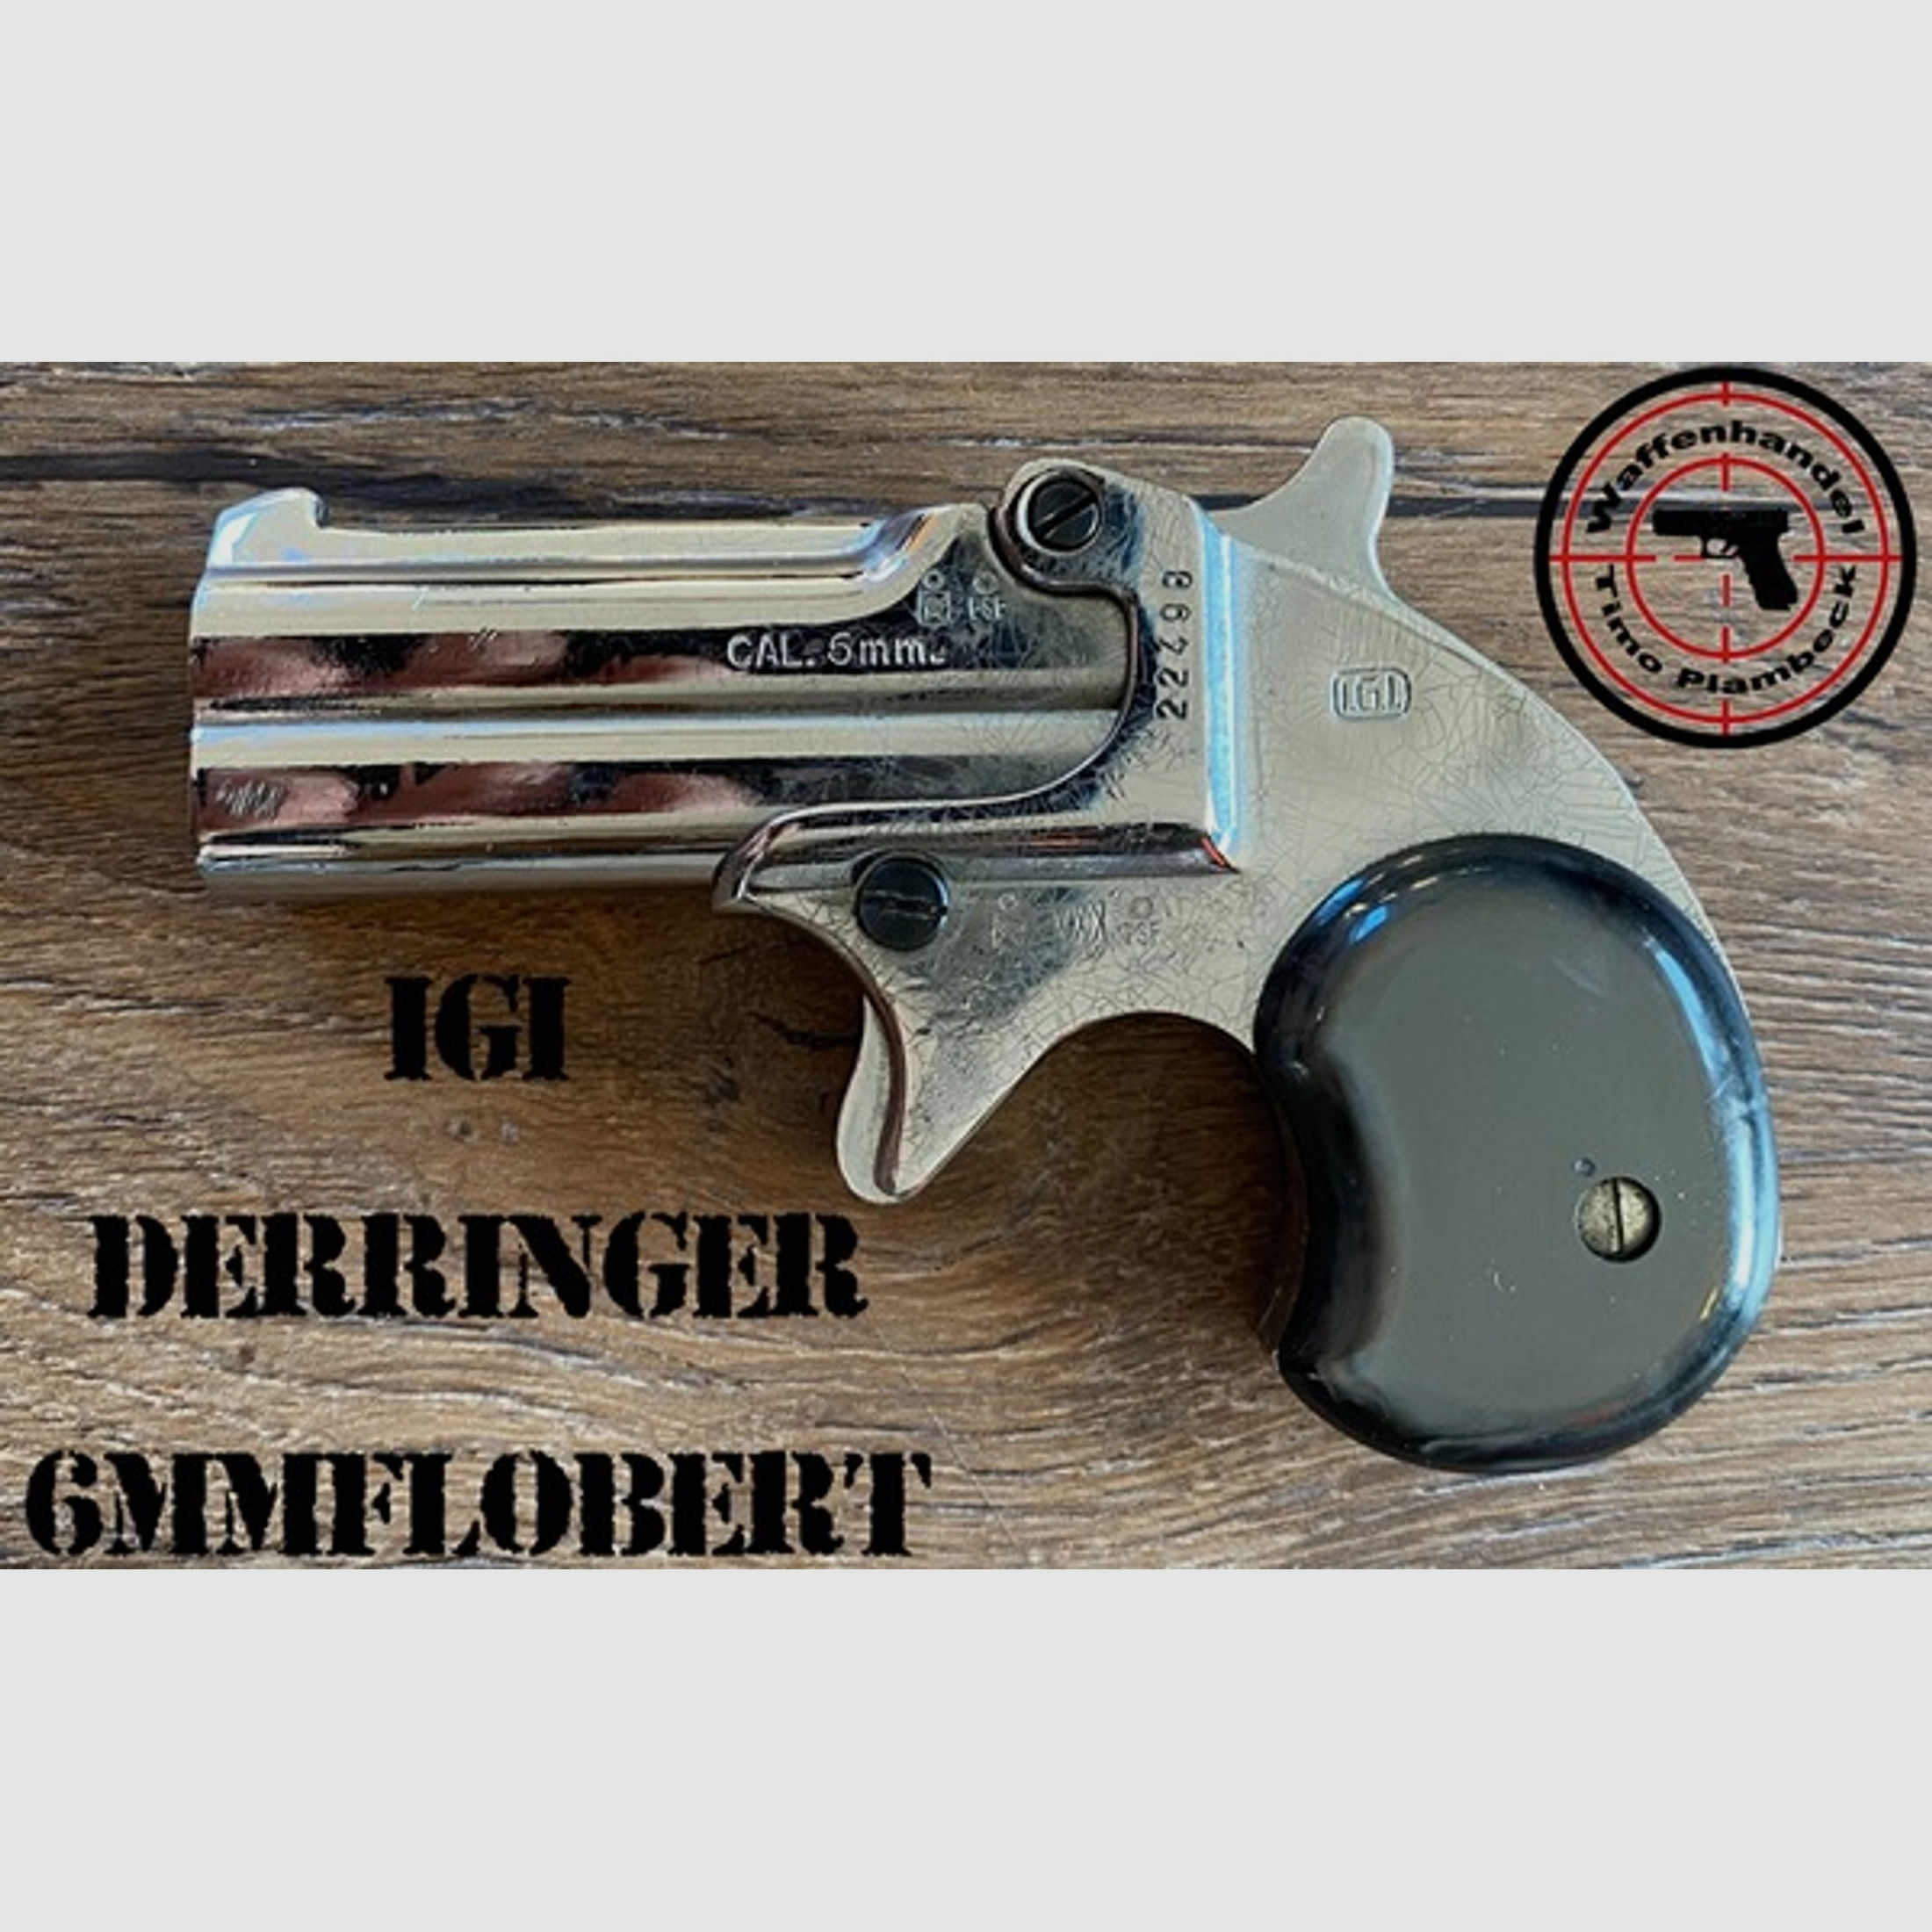 Einzellader-Pistole  IGI  Derringer  im Kaliber 6mm Flobert